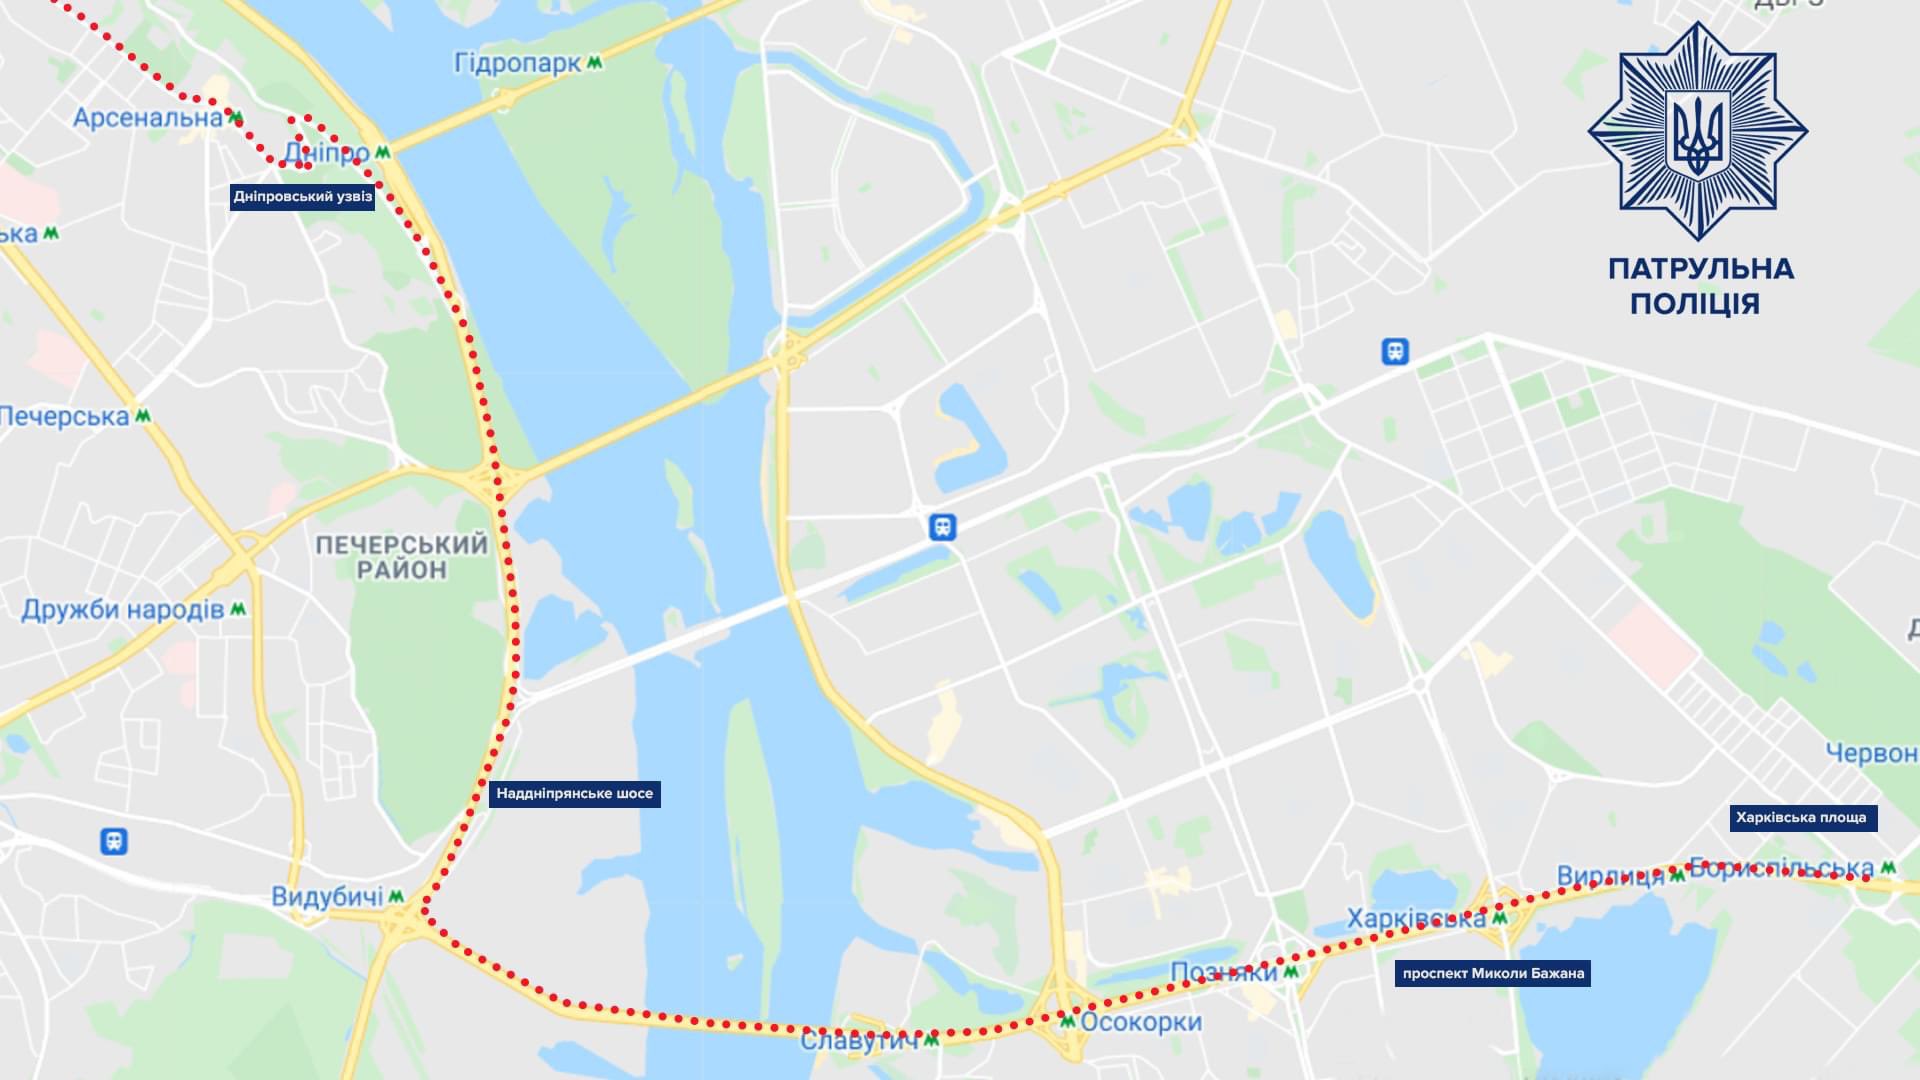 В Киеве сегодня ограничат движение транспорта: список маршрутов